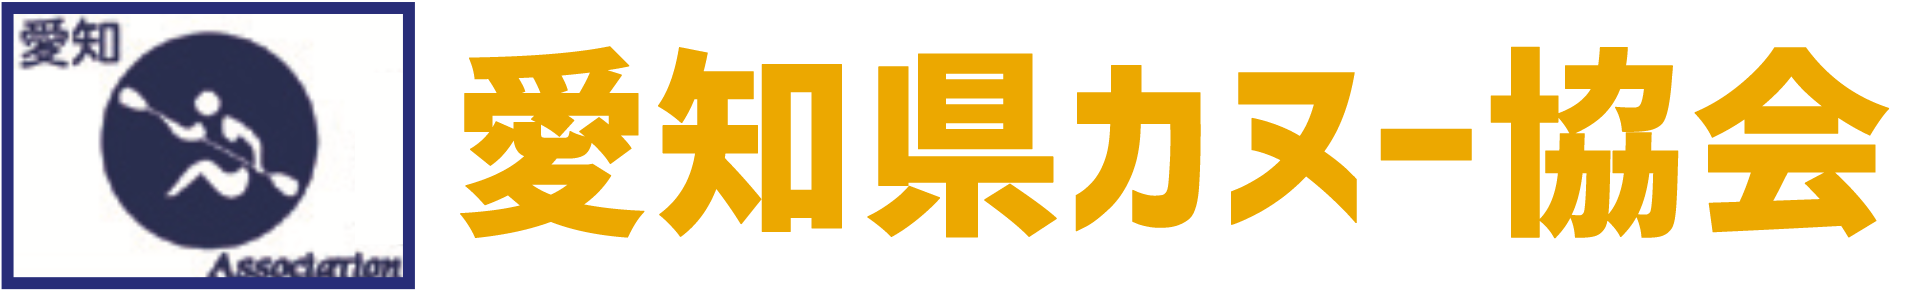 愛知県カヌー協会